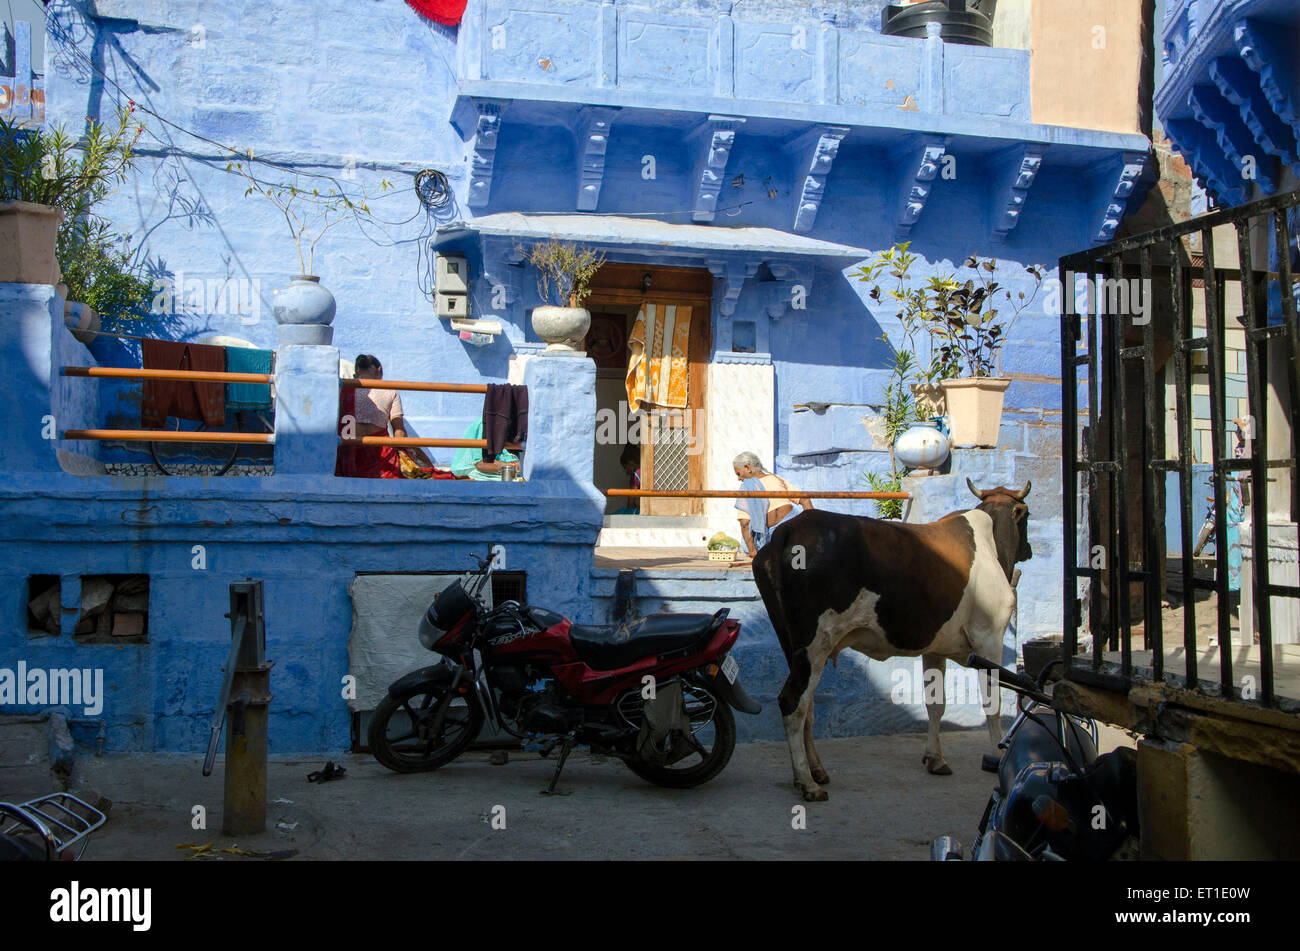 Kuh und Fahrrad vor Haus Jodhpur Rajasthan Indien Asien Stockfoto